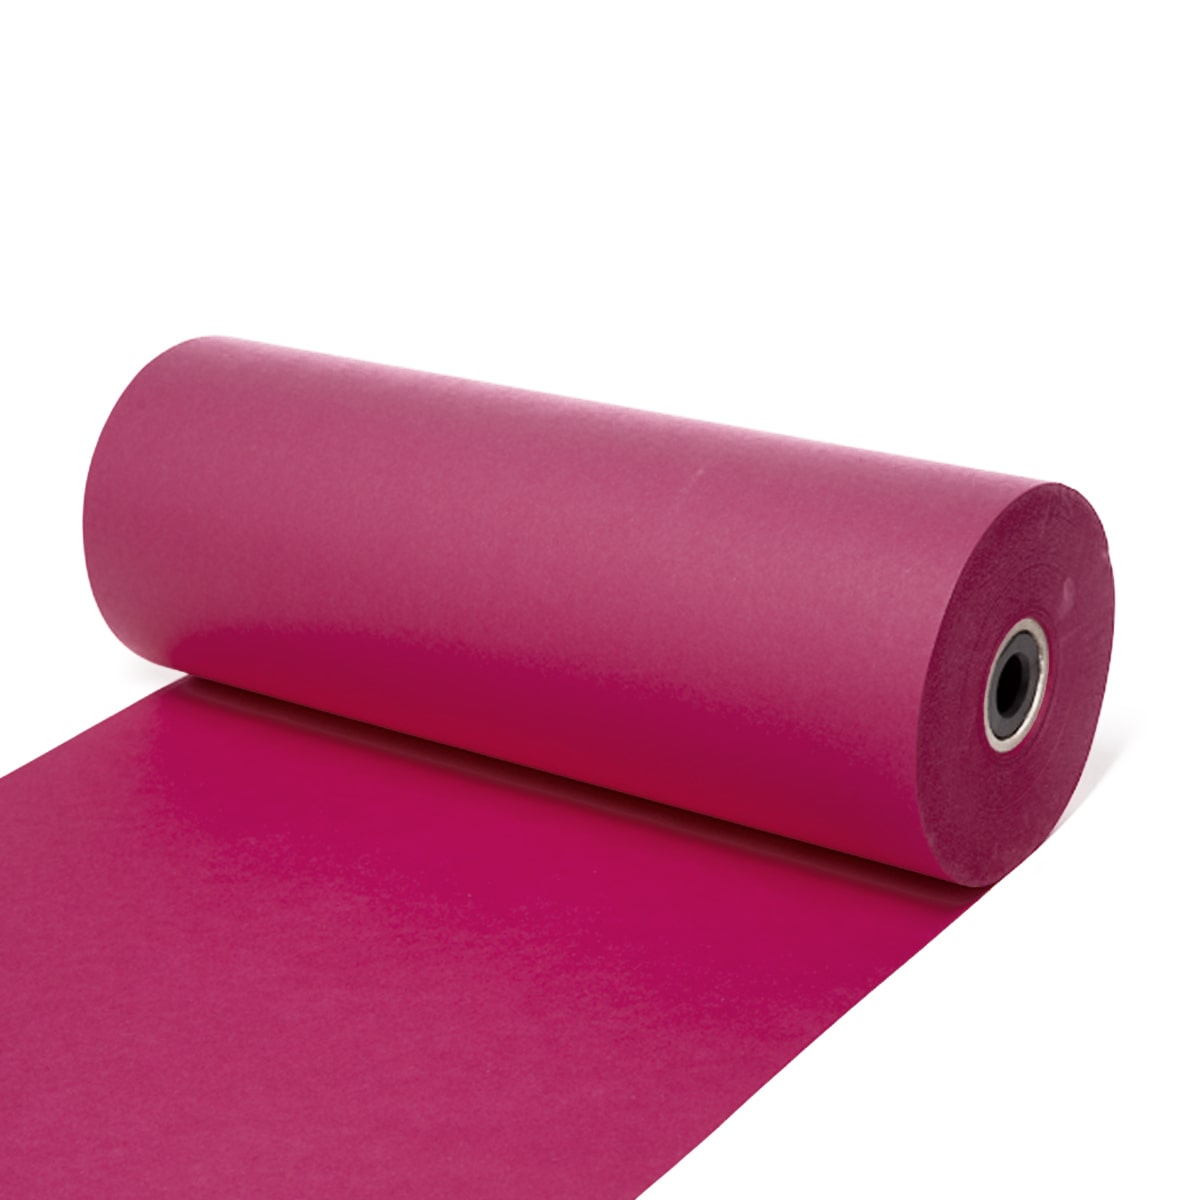 Seidenpapier Pink, 50 / 75 cm breit, 500 Meter / Rolle